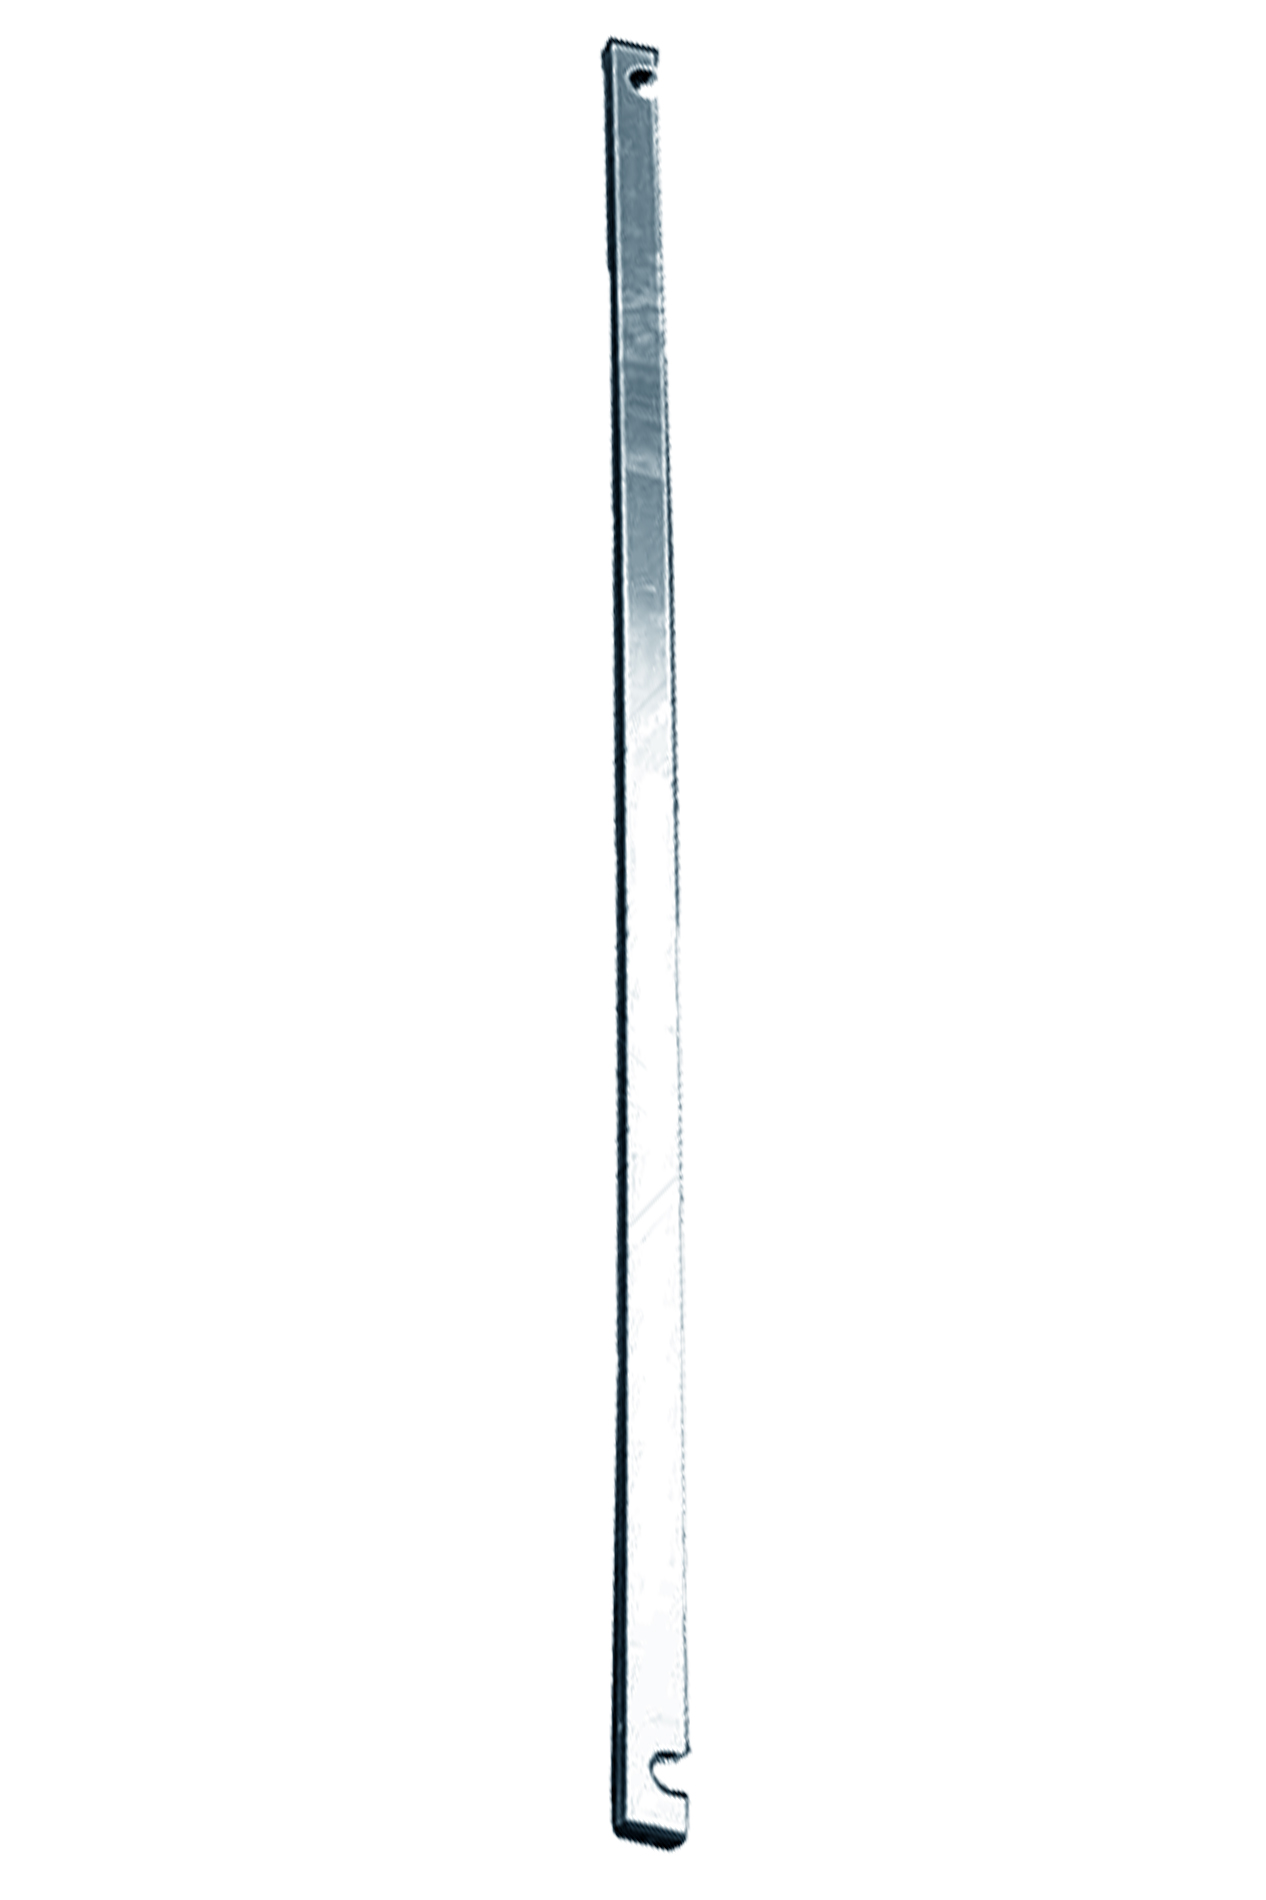 Дополнительное изображение Stabilo серии 1000 рабочая высота 8,2 м, размер площадки (3x0.75 м)